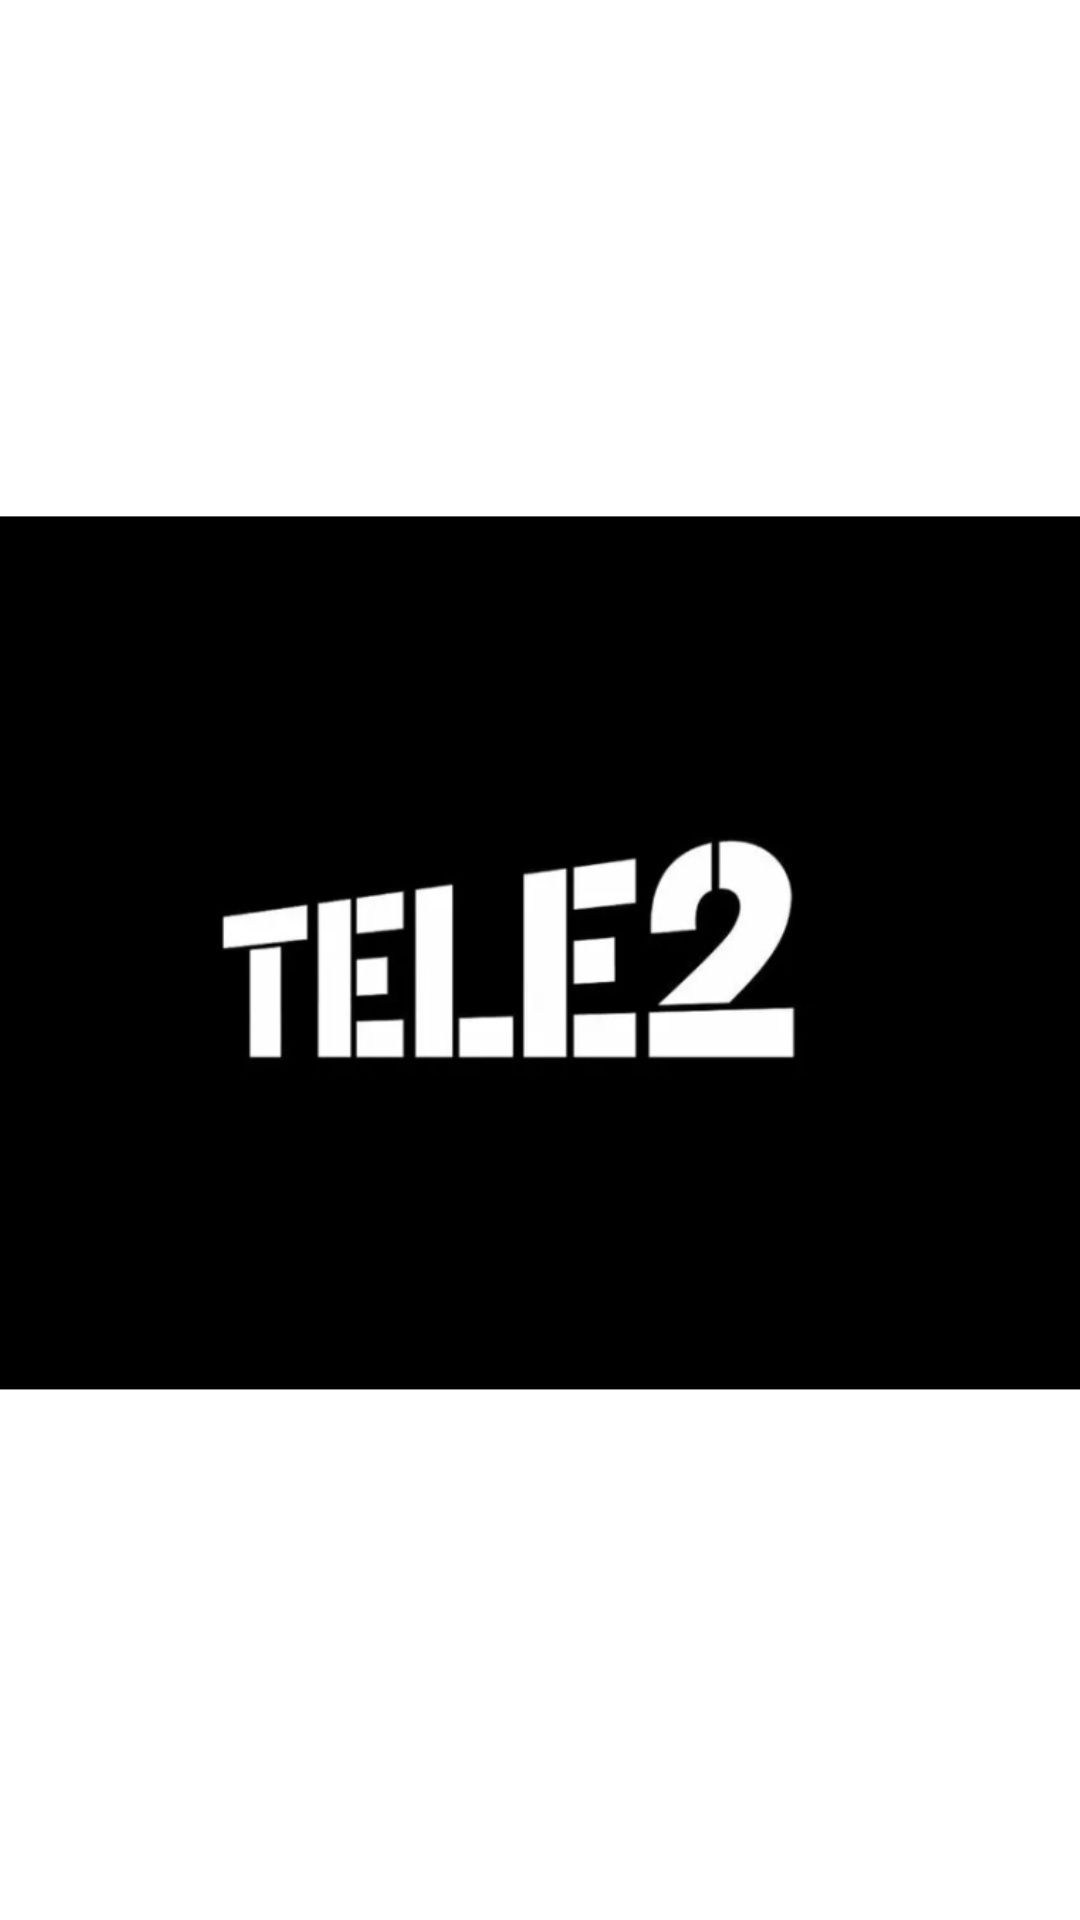 Теле2 кемерово телефон. Фирменный знак теле2. Tele2 картинки. Теле2 логотип вертикальные. Первый логотип теле2.